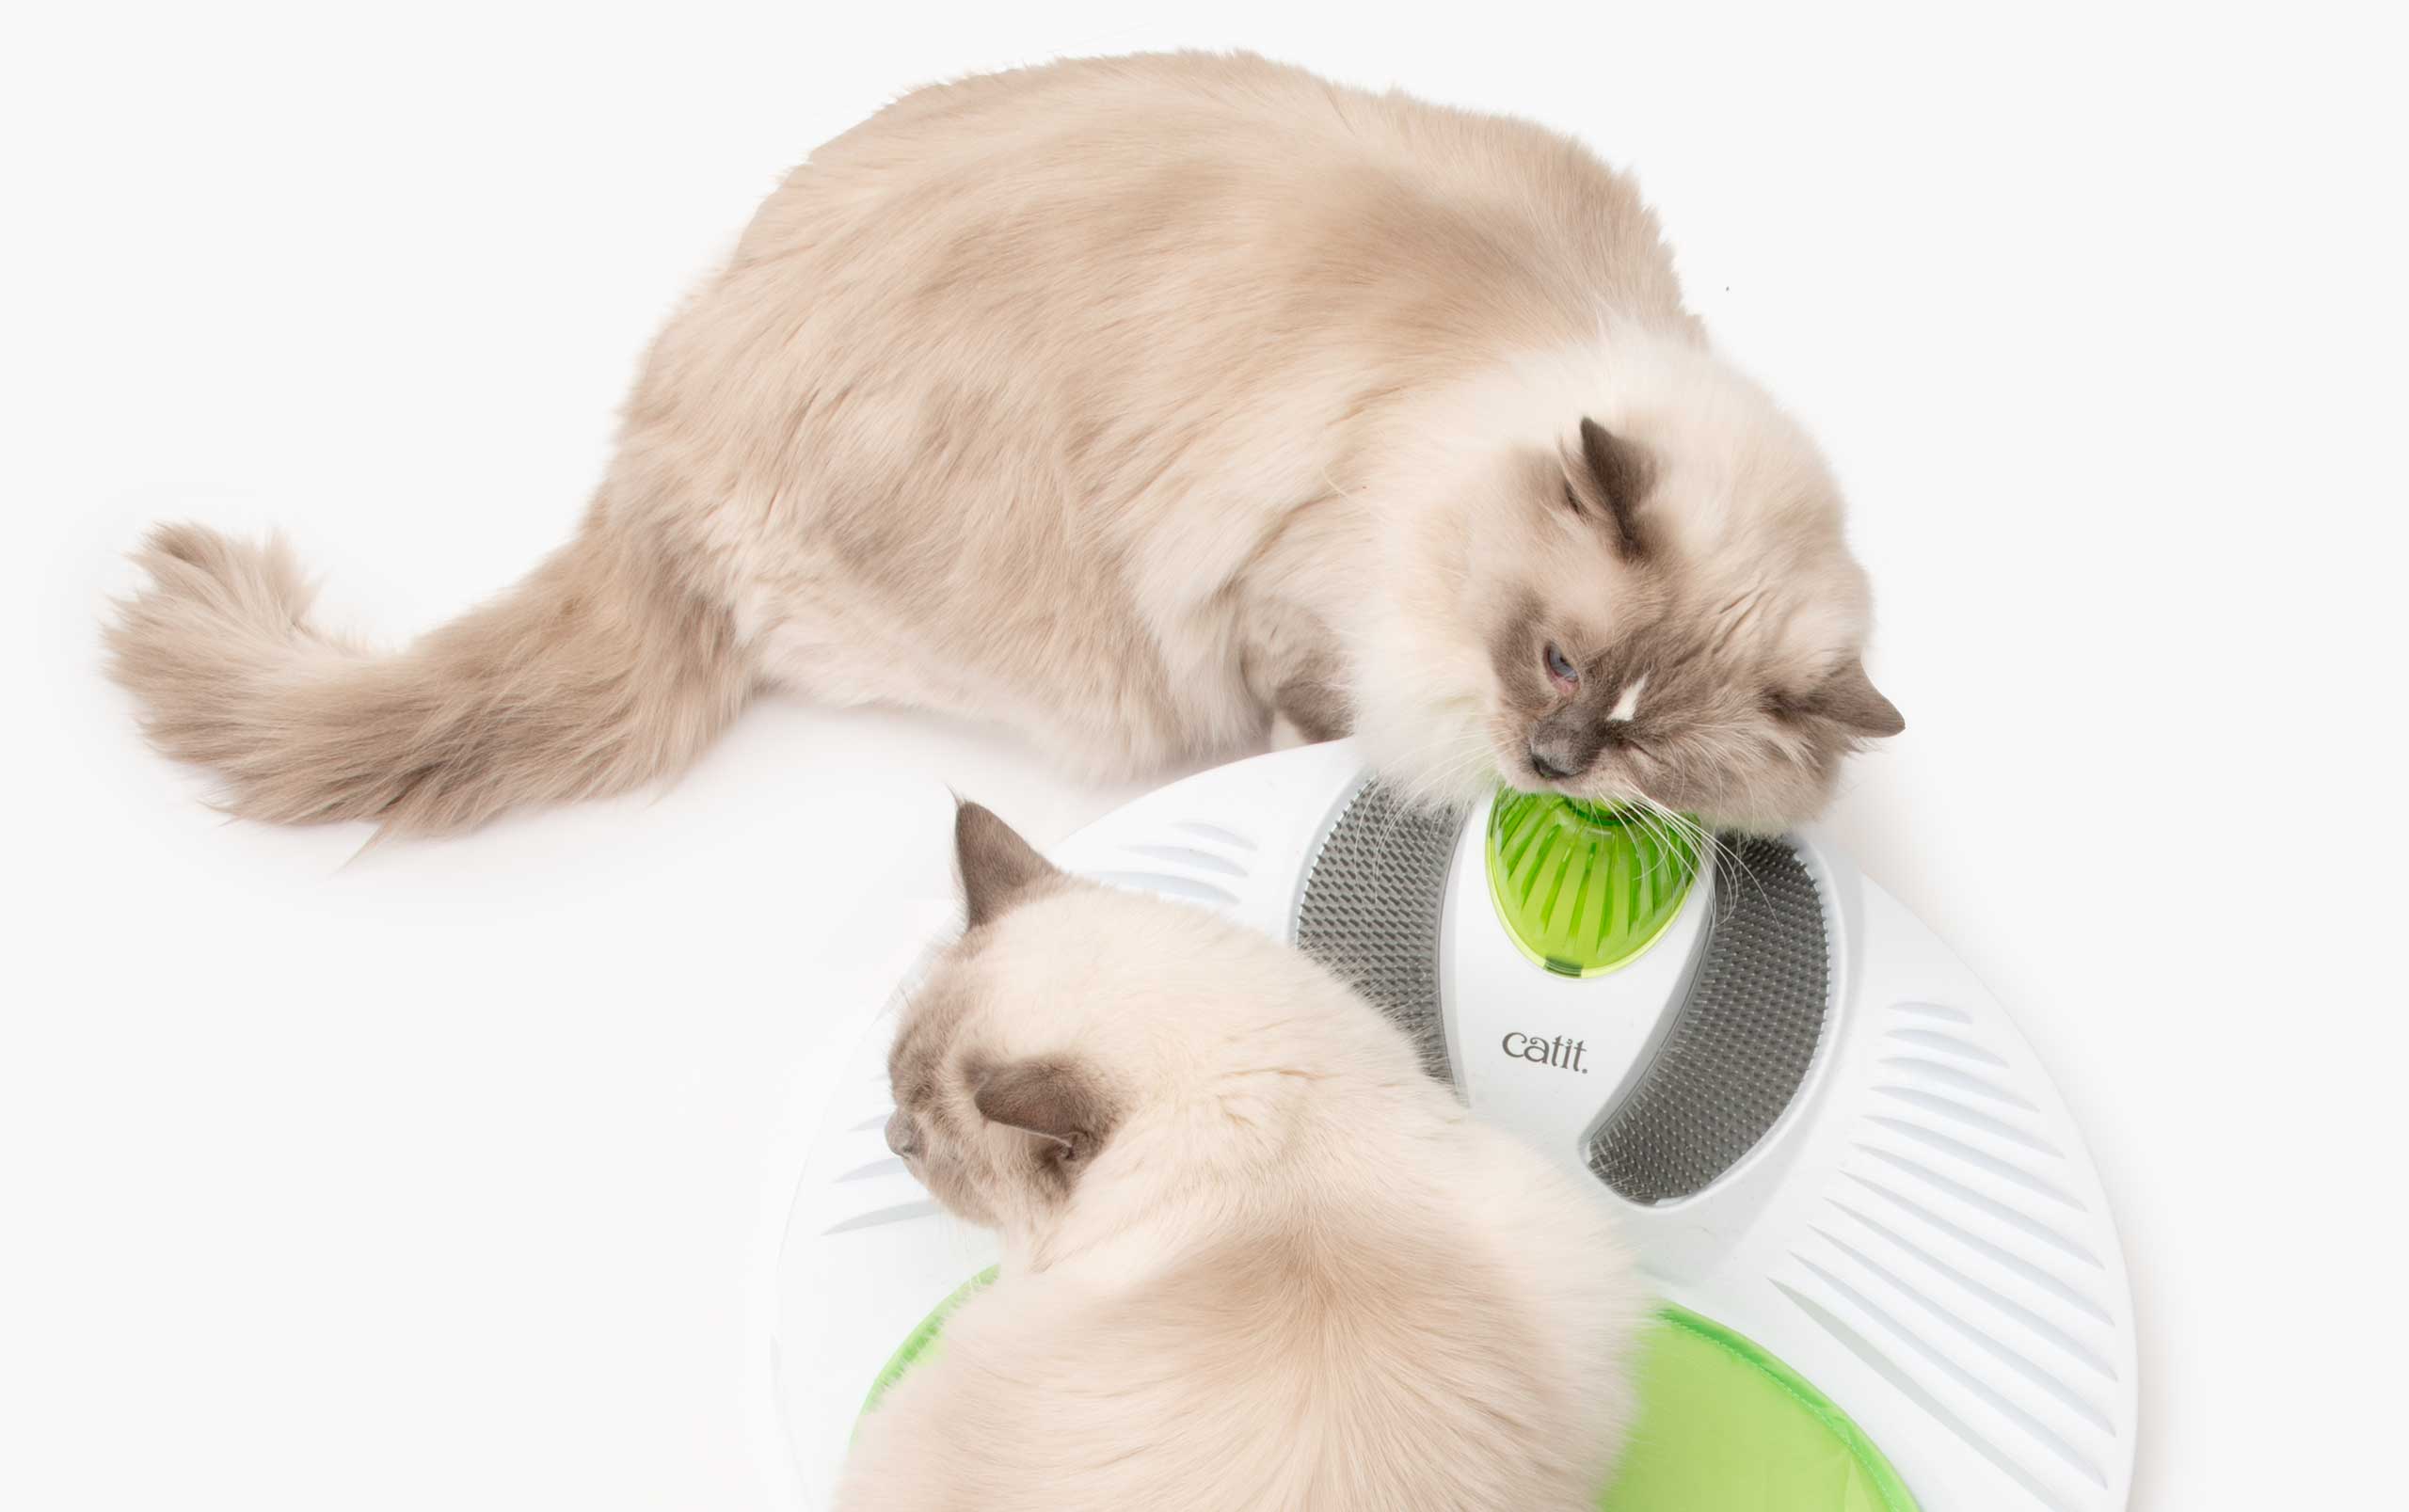 Aplicar catnip para ajudar os gatos a interagir mais com brinquedos e arranhadores.